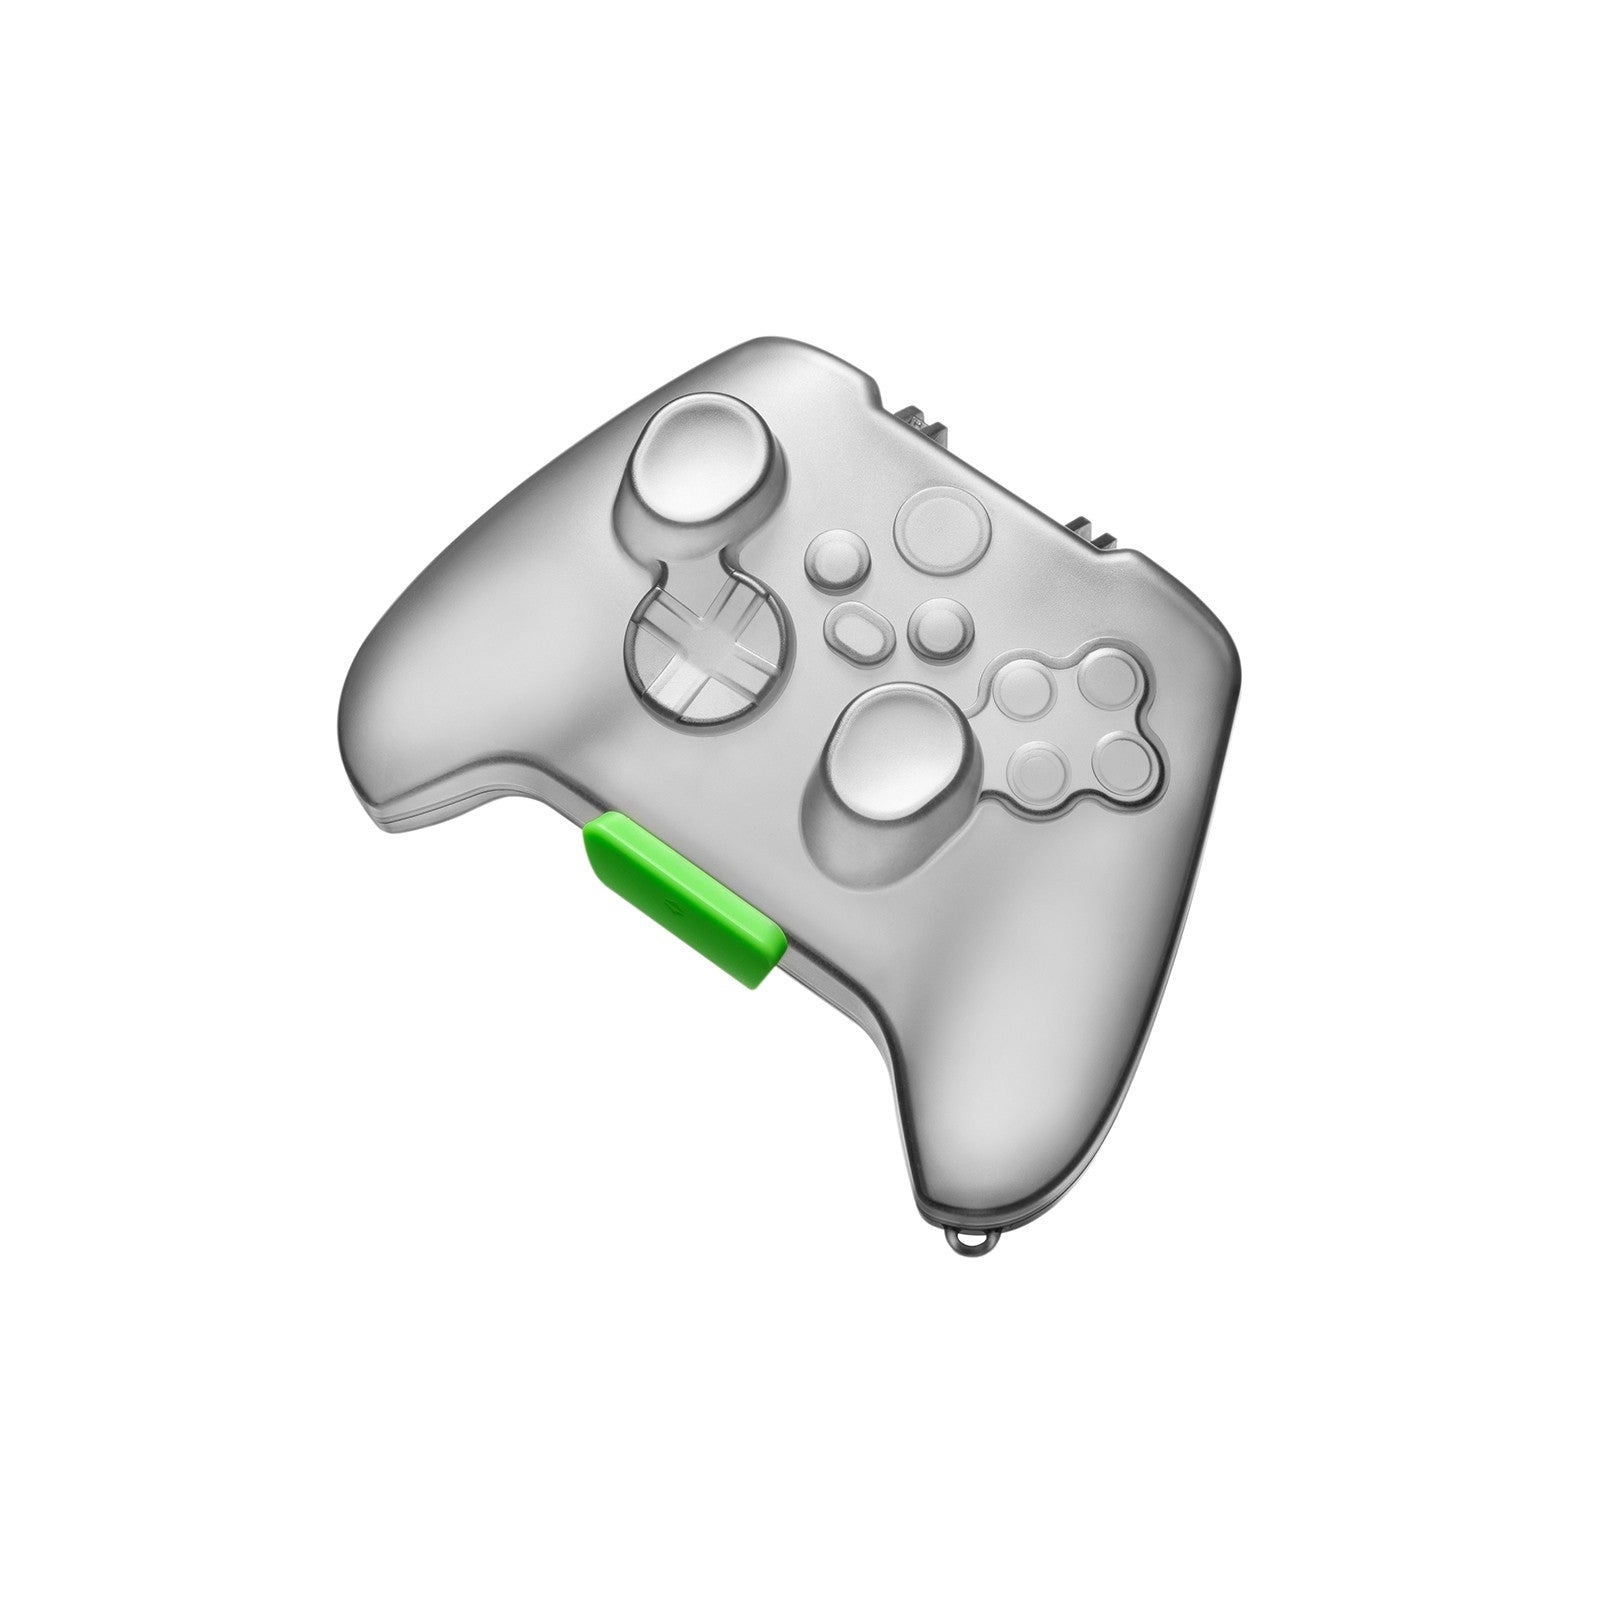 ArmorCase-G26 Controller Case for Xbox X/S Series